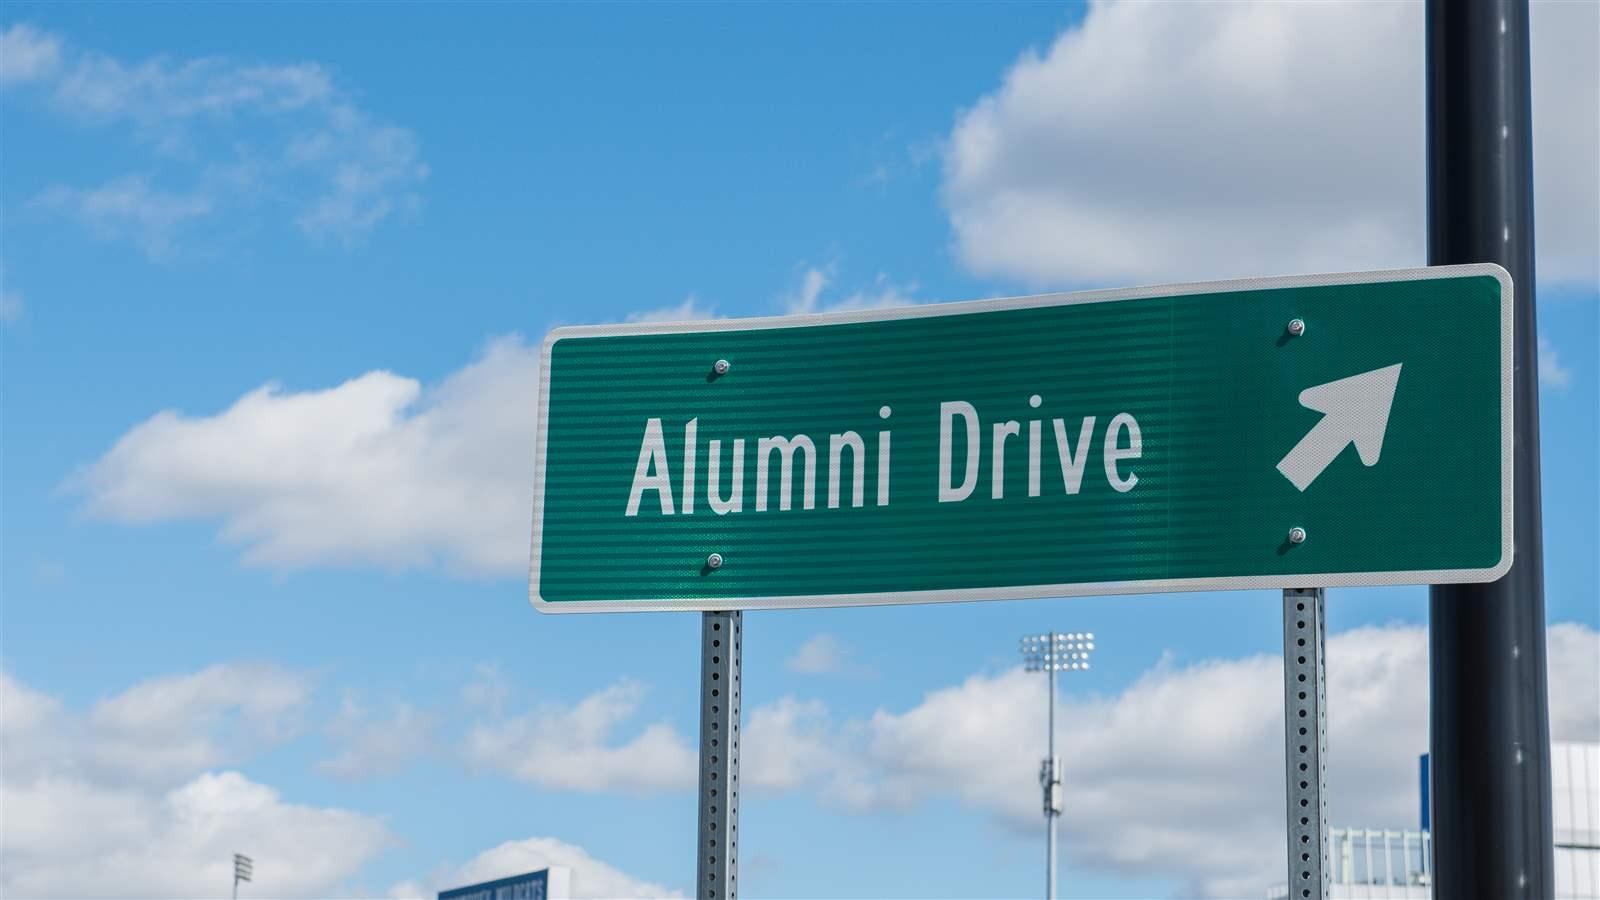 Alumni Drive street sign